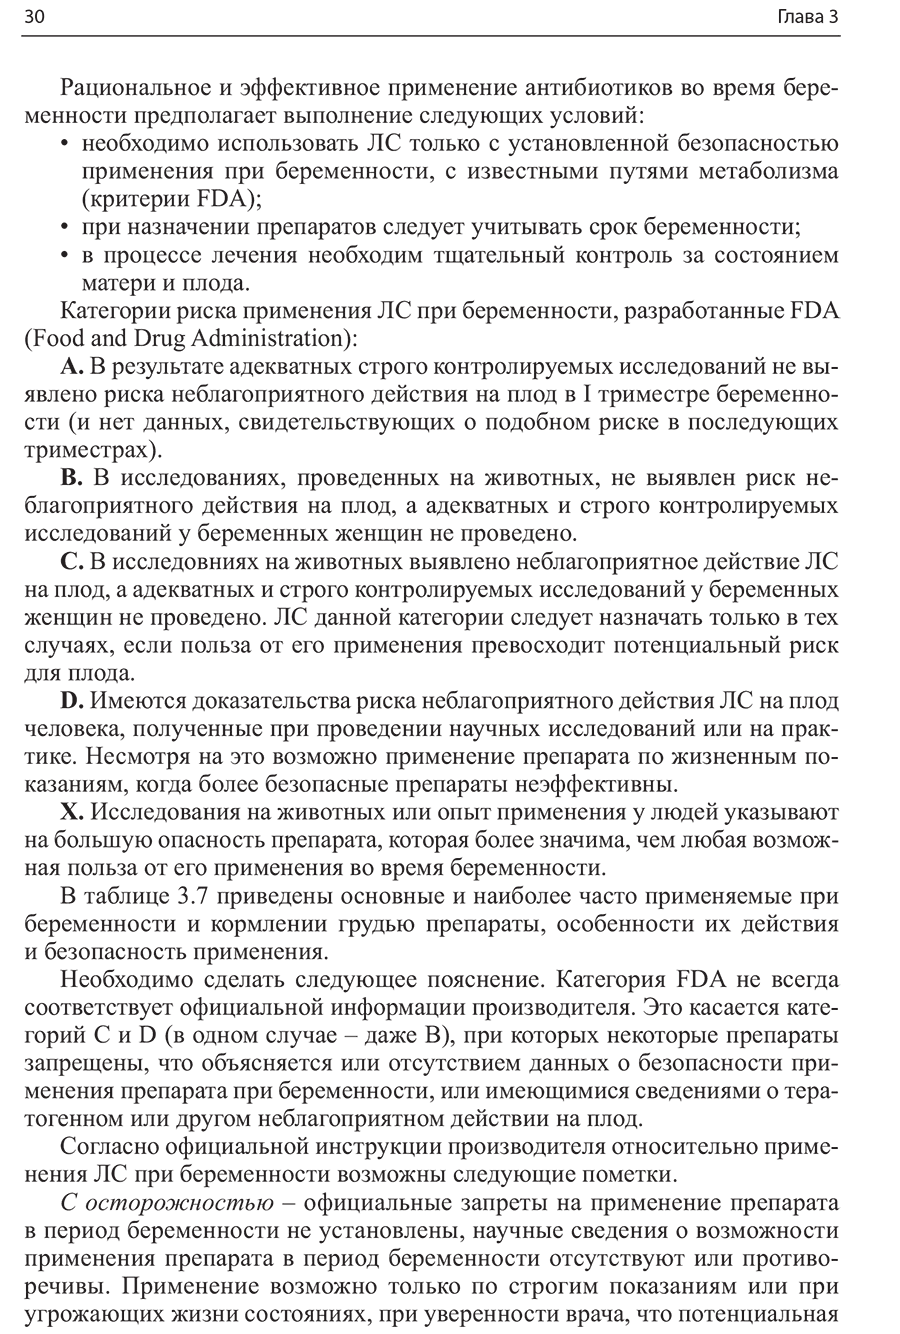 Пример страницы из книги "Бактериальные и вирусные инфекции в акушерстве и гинекологии" - Макаров И. О.